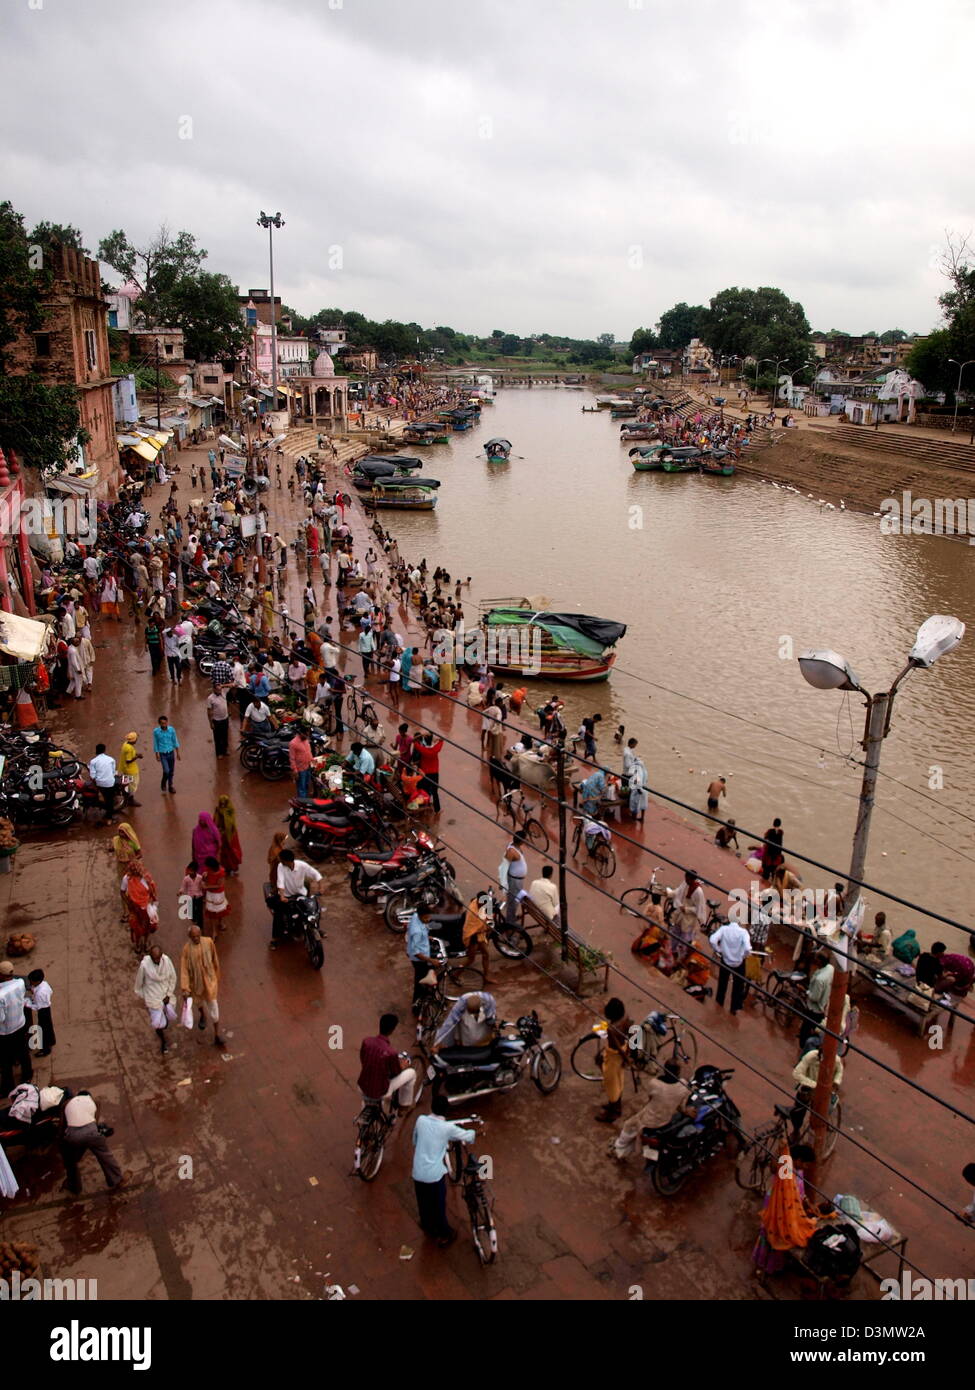 Ramghat on the Mandakini river in Chitrakoot (Chitrakuta), India Stock Photo